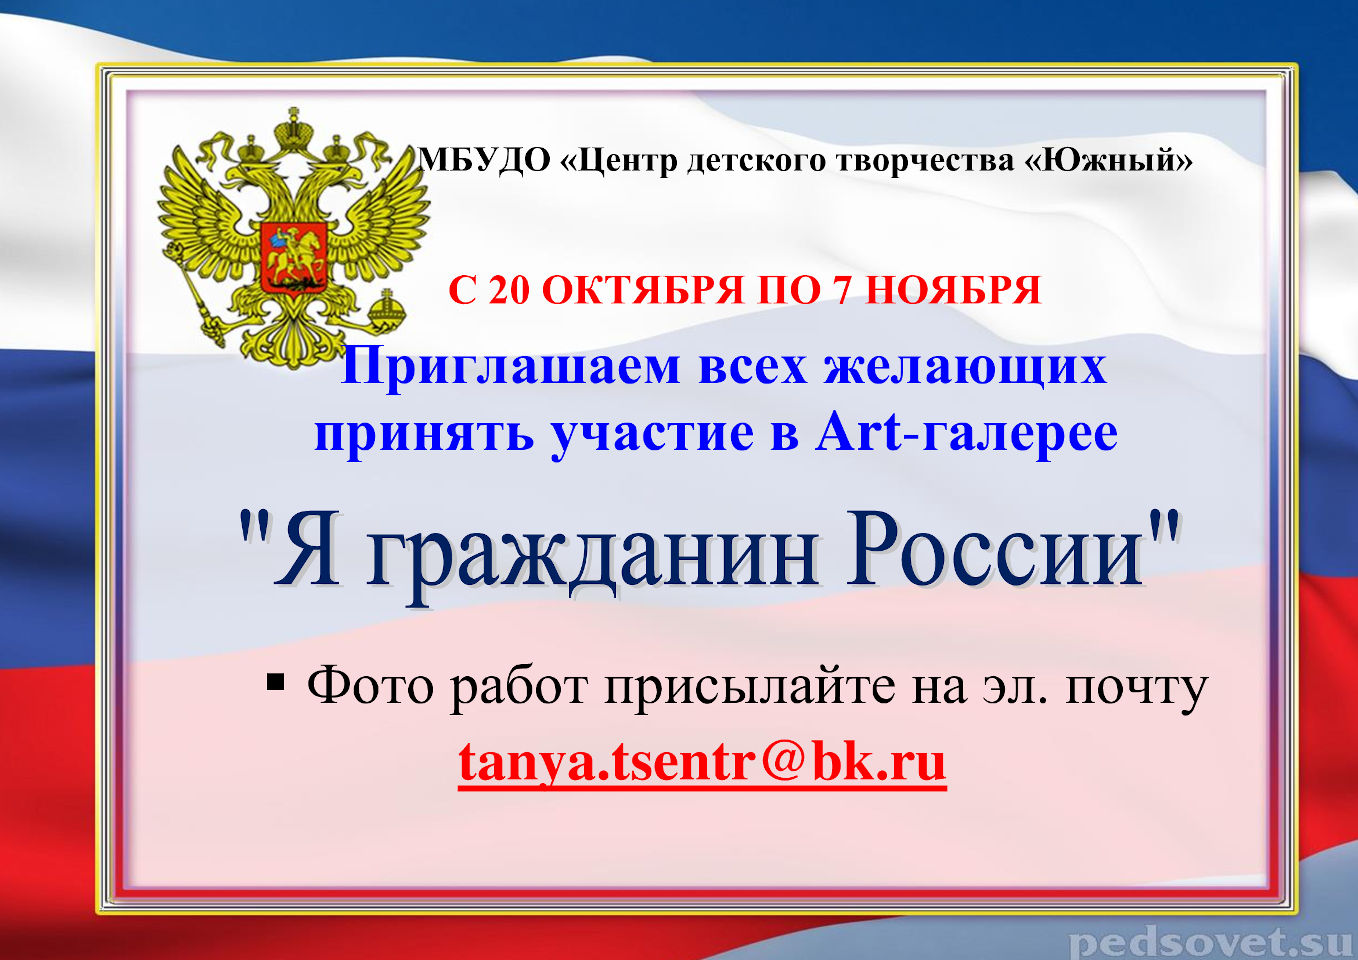 Art-галерея «Я гражданин России»